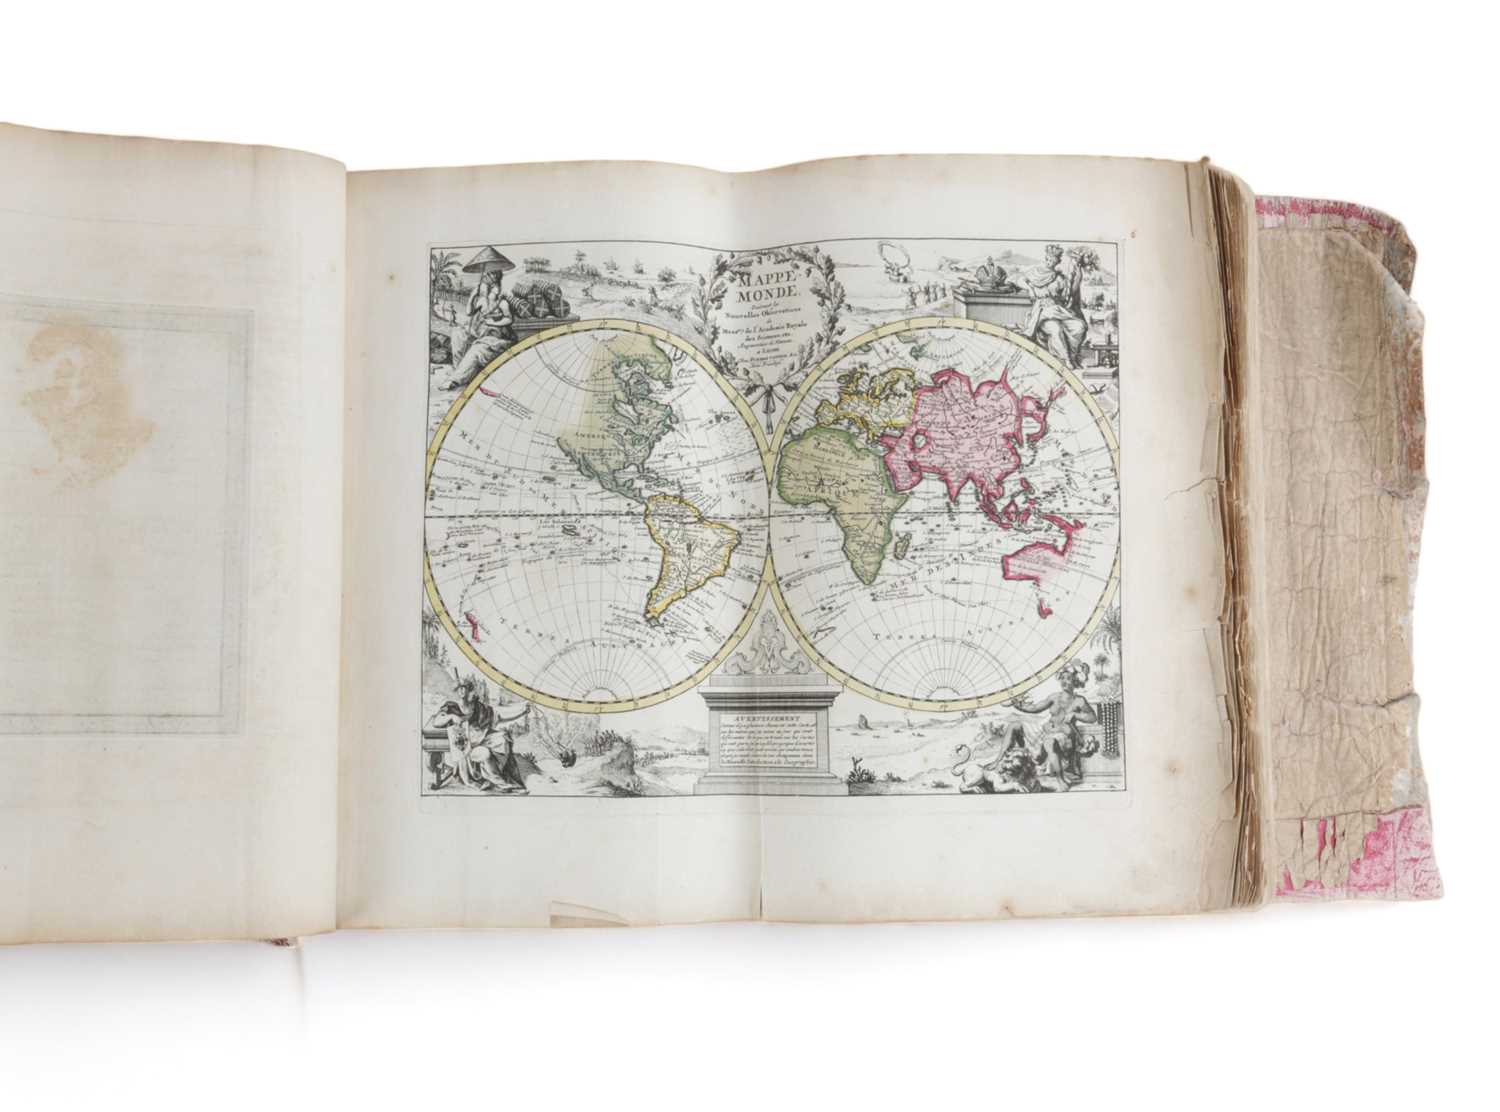 'NOUVEL ATLAS TRES-EXACT ET FORT COMMODE' BY PIERRE VANDEN AA, C.1715-20 'pour toutes sortes de - Image 3 of 4